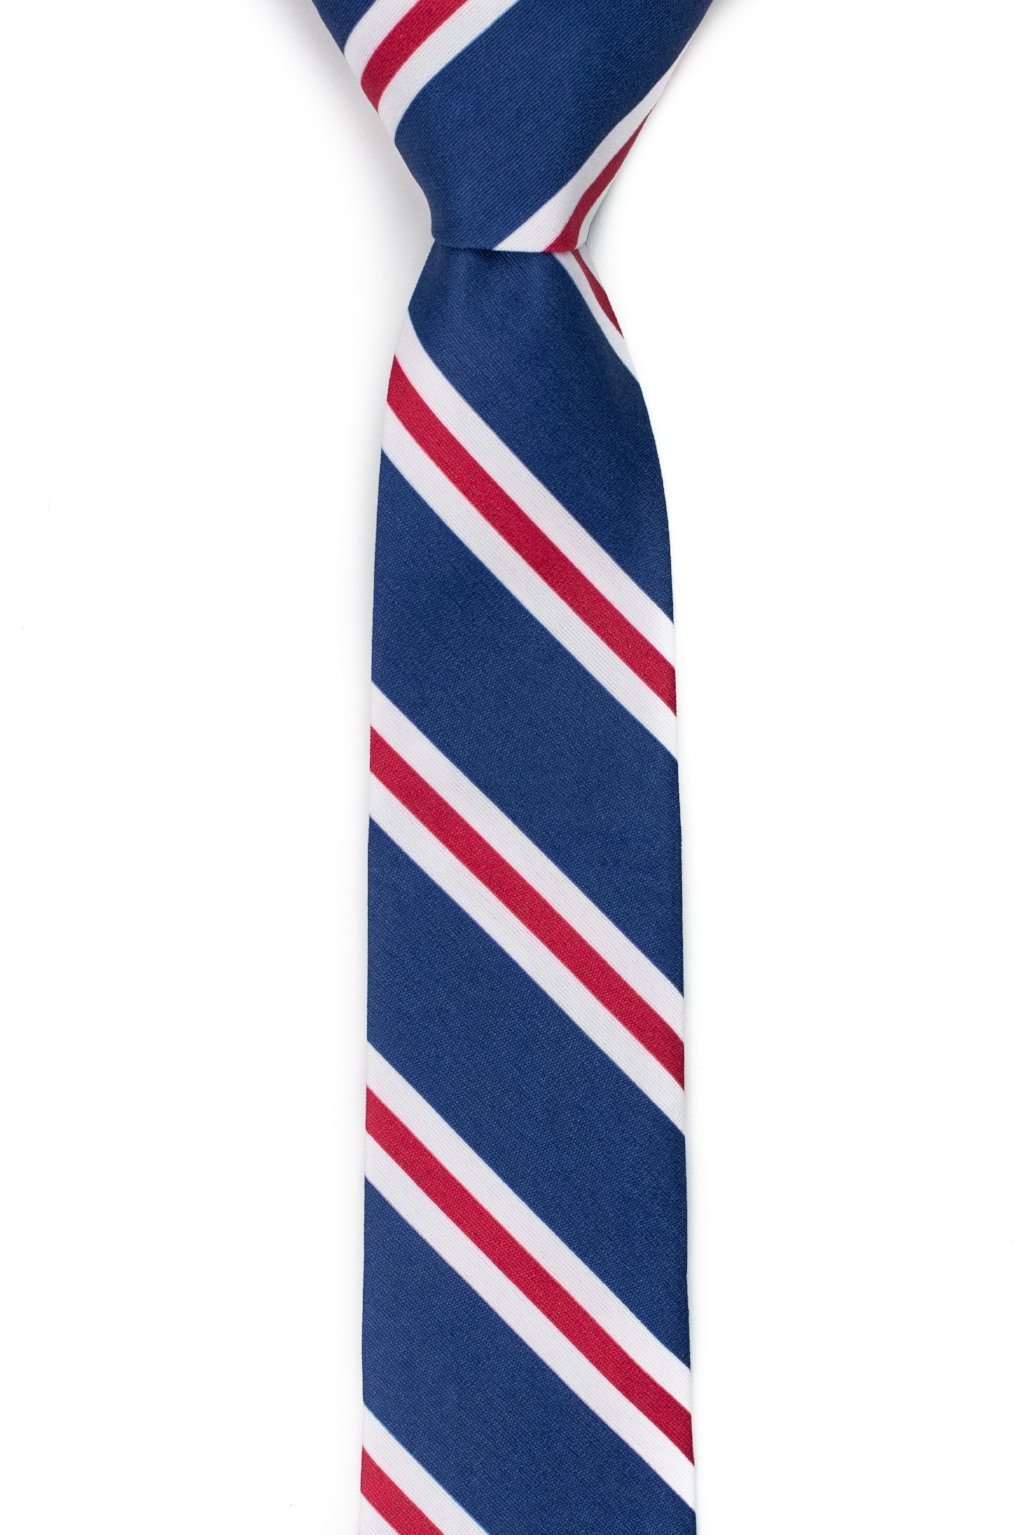 Patriot - Tough Tie